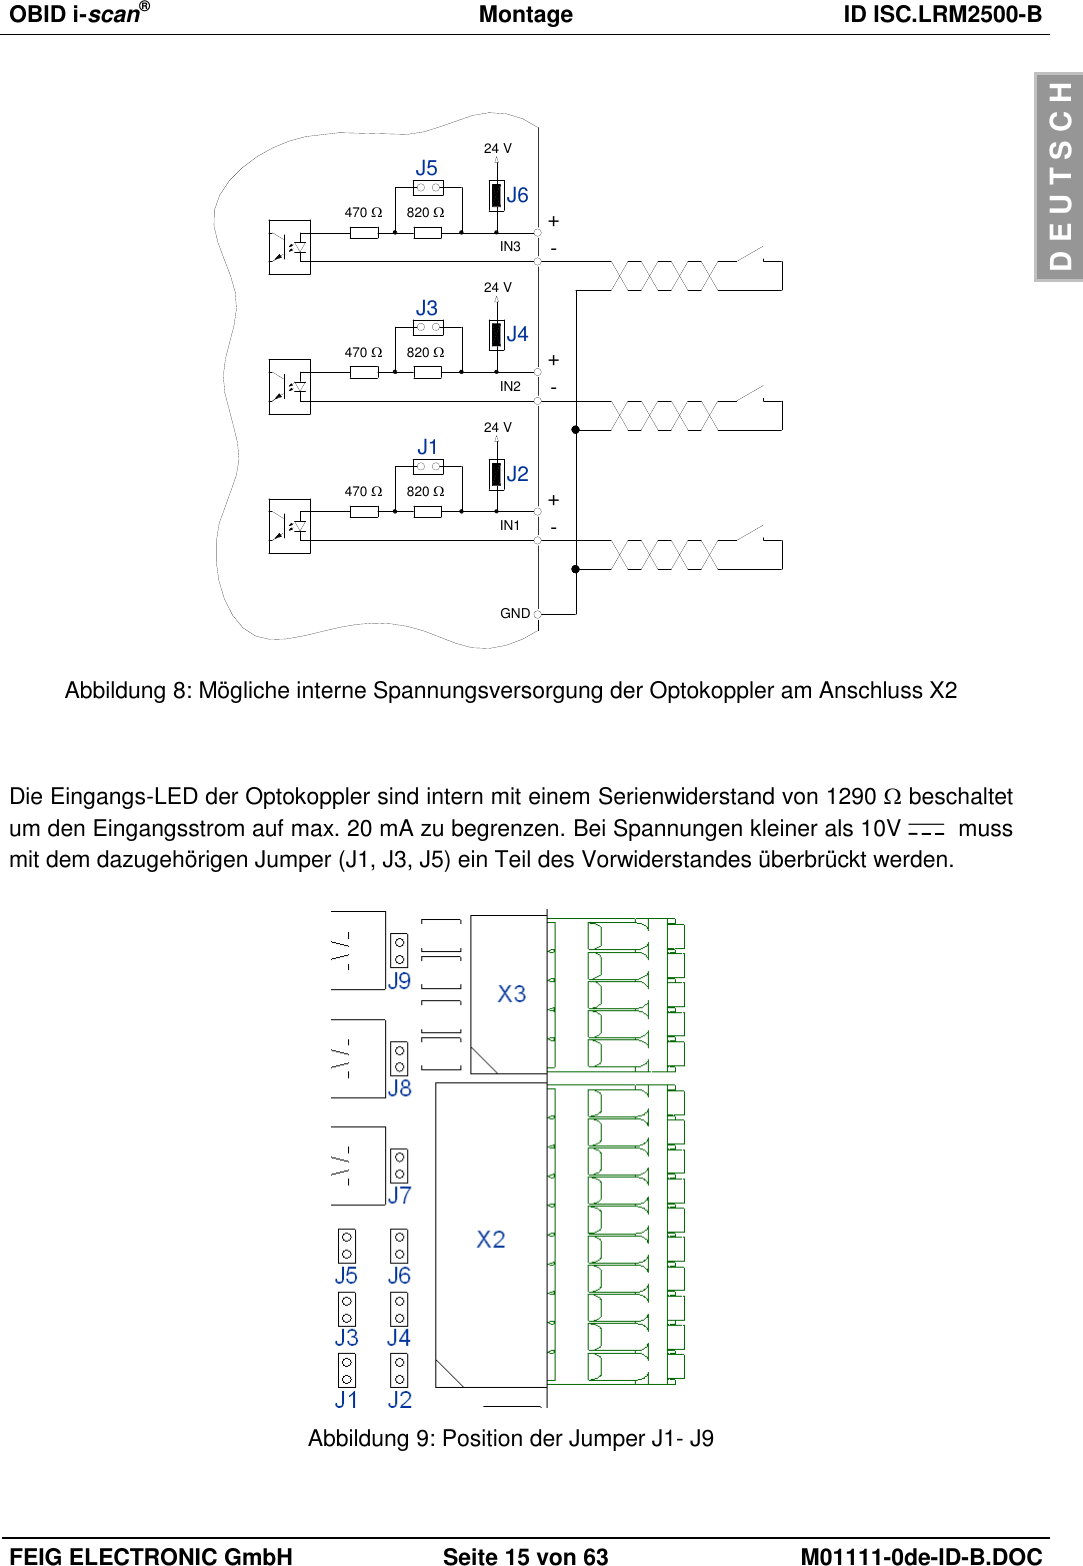 OBID i-scan®  Montage ID ISC.LRM2500-B  FEIG ELECTRONIC GmbH Seite 15 von 63 M01111-0de-ID-B.DOC  D E U T S C H  470 +IN1 -820 J2J1 24 V470 +IN2 -820 J4J3 24 V470 +IN3 -820 J6J5 24 VGND Abbildung 8: Mögliche interne Spannungsversorgung der Optokoppler am Anschluss X2   Die Eingangs-LED der Optokoppler sind intern mit einem Serienwiderstand von 1290  beschaltet um den Eingangsstrom auf max. 20 mA zu begrenzen. Bei Spannungen kleiner als 10V    muss mit dem dazugehörigen Jumper (J1, J3, J5) ein Teil des Vorwiderstandes überbrückt werden.   Abbildung 9: Position der Jumper J1- J9  